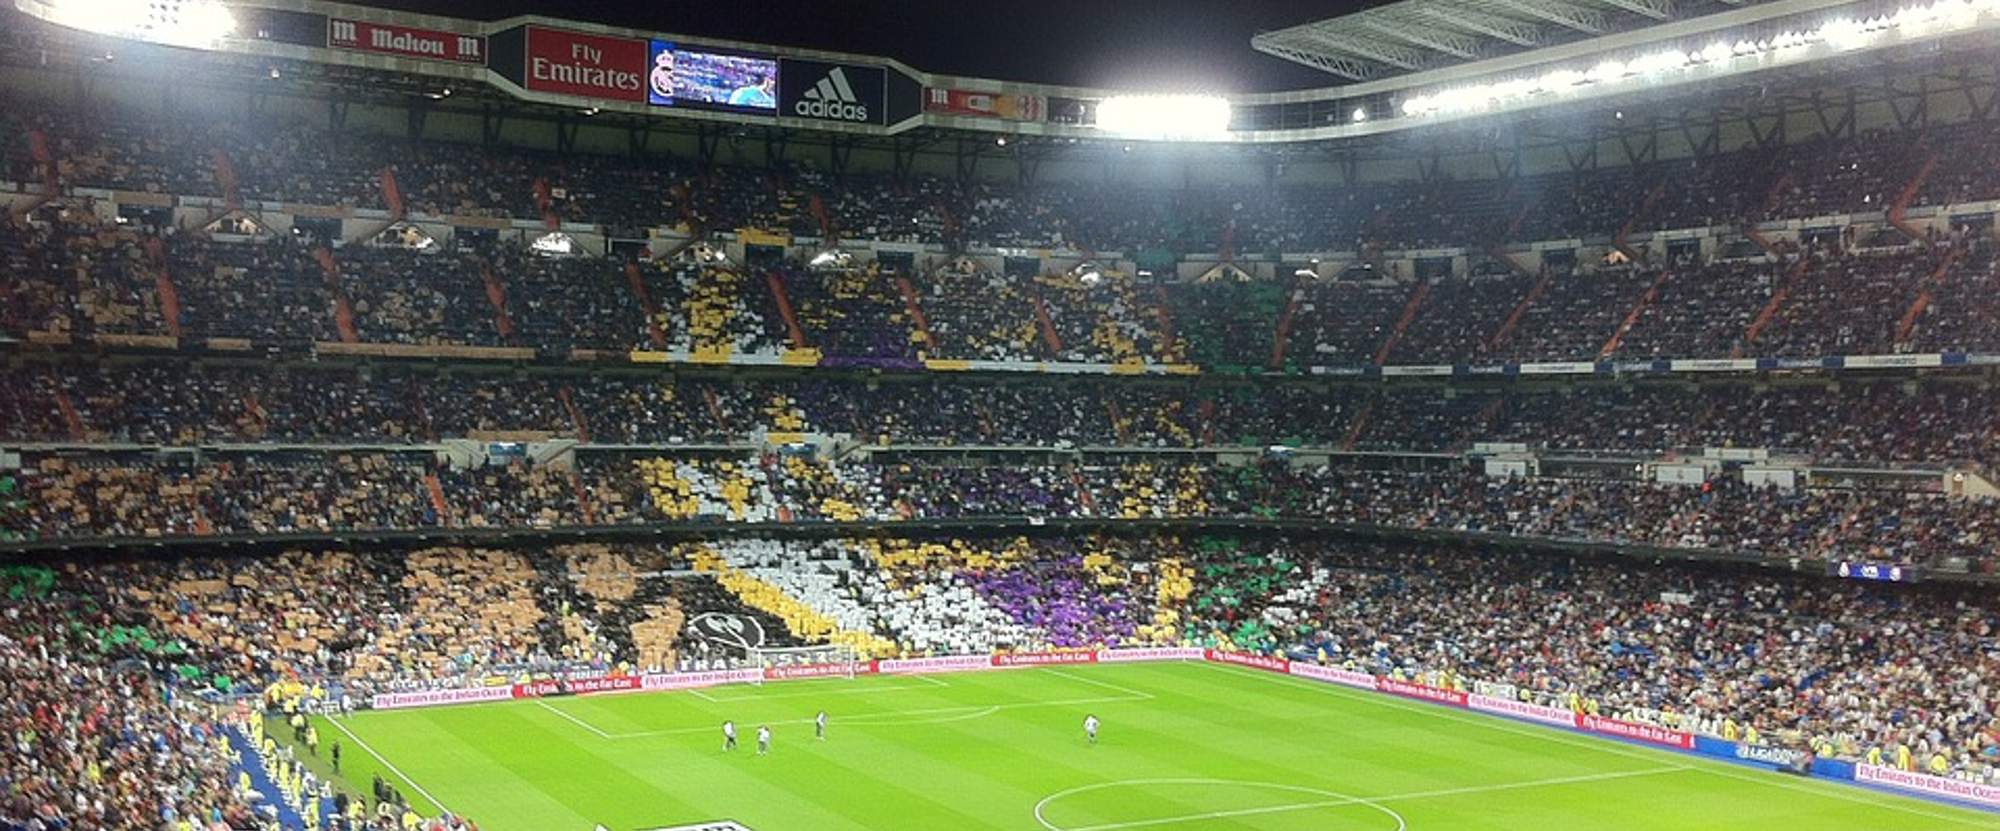 Real Madrid v Deportivo Alavés